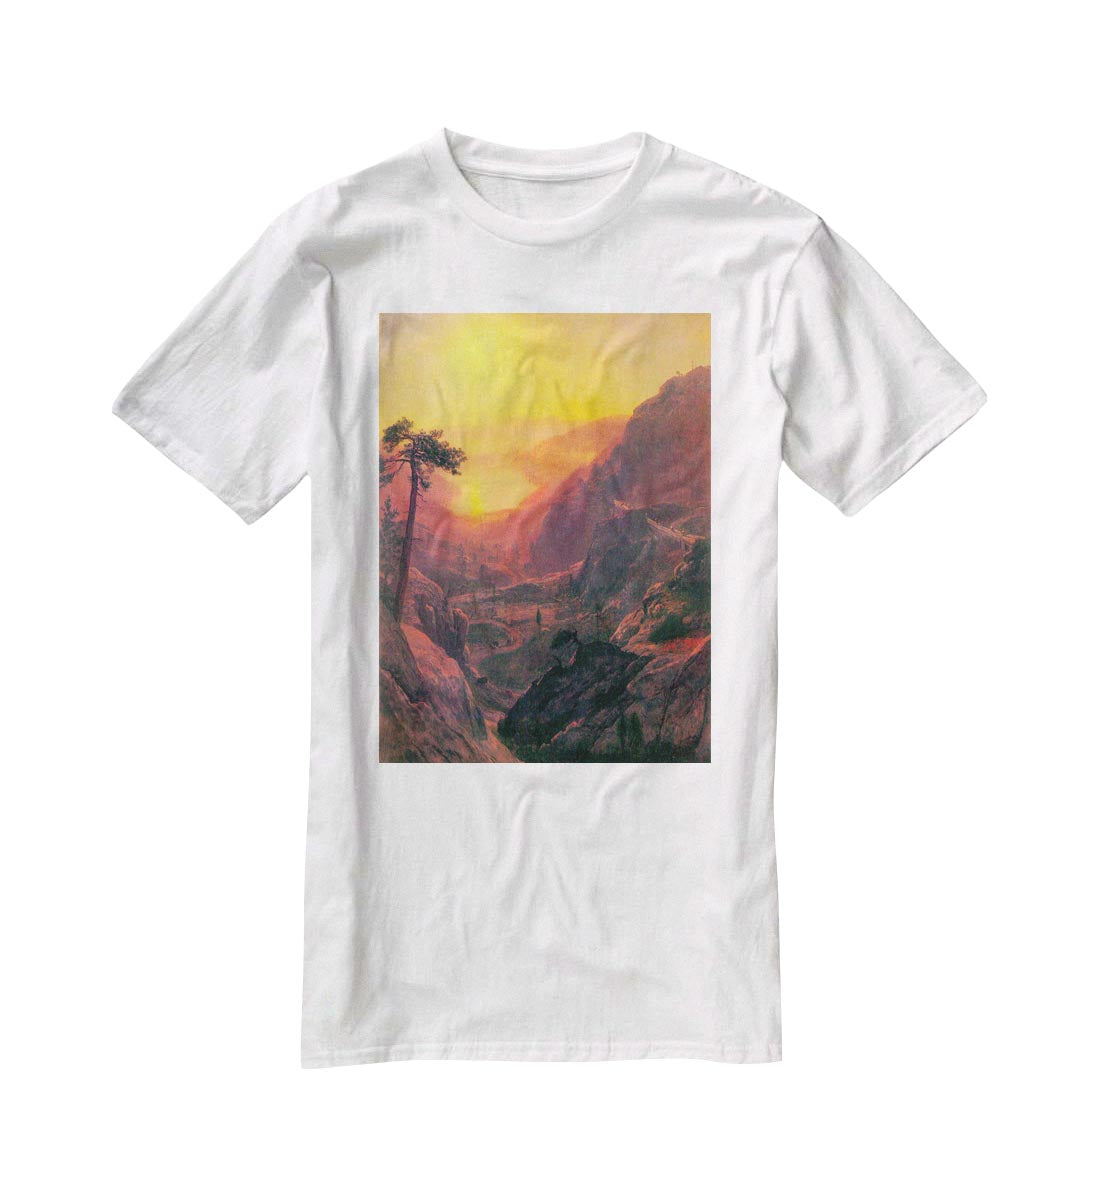 Donner Lake by Bierstadt T-Shirt - Canvas Art Rocks - 5